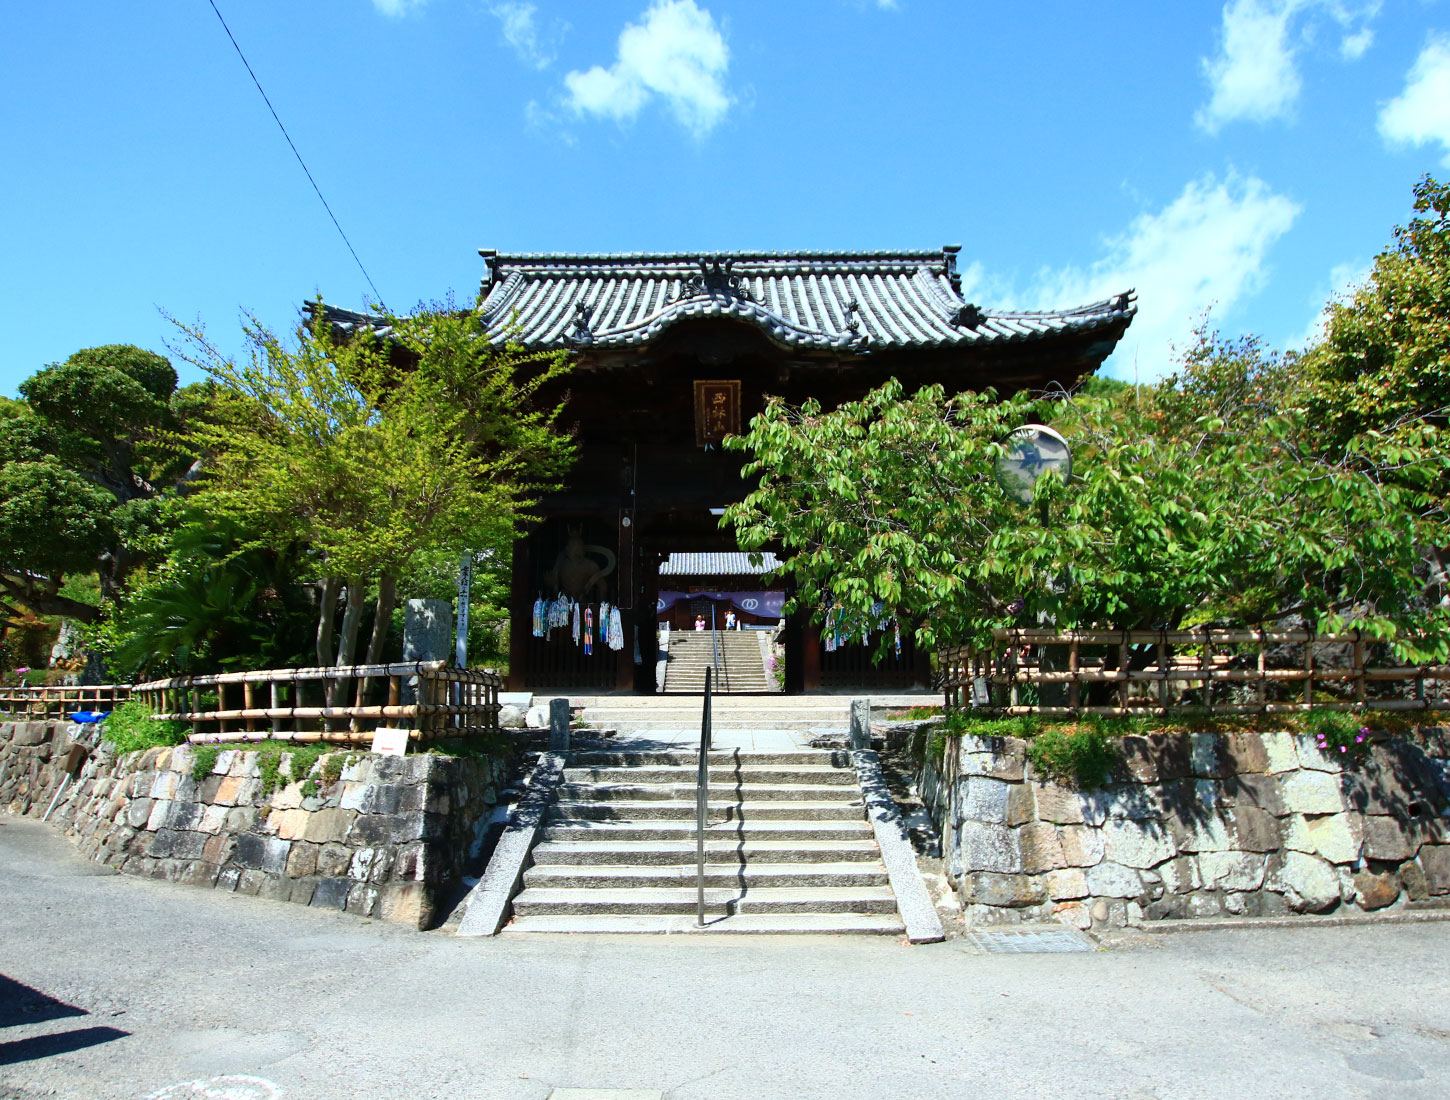 Nishibayashi Sanzoin Jodoji Temple